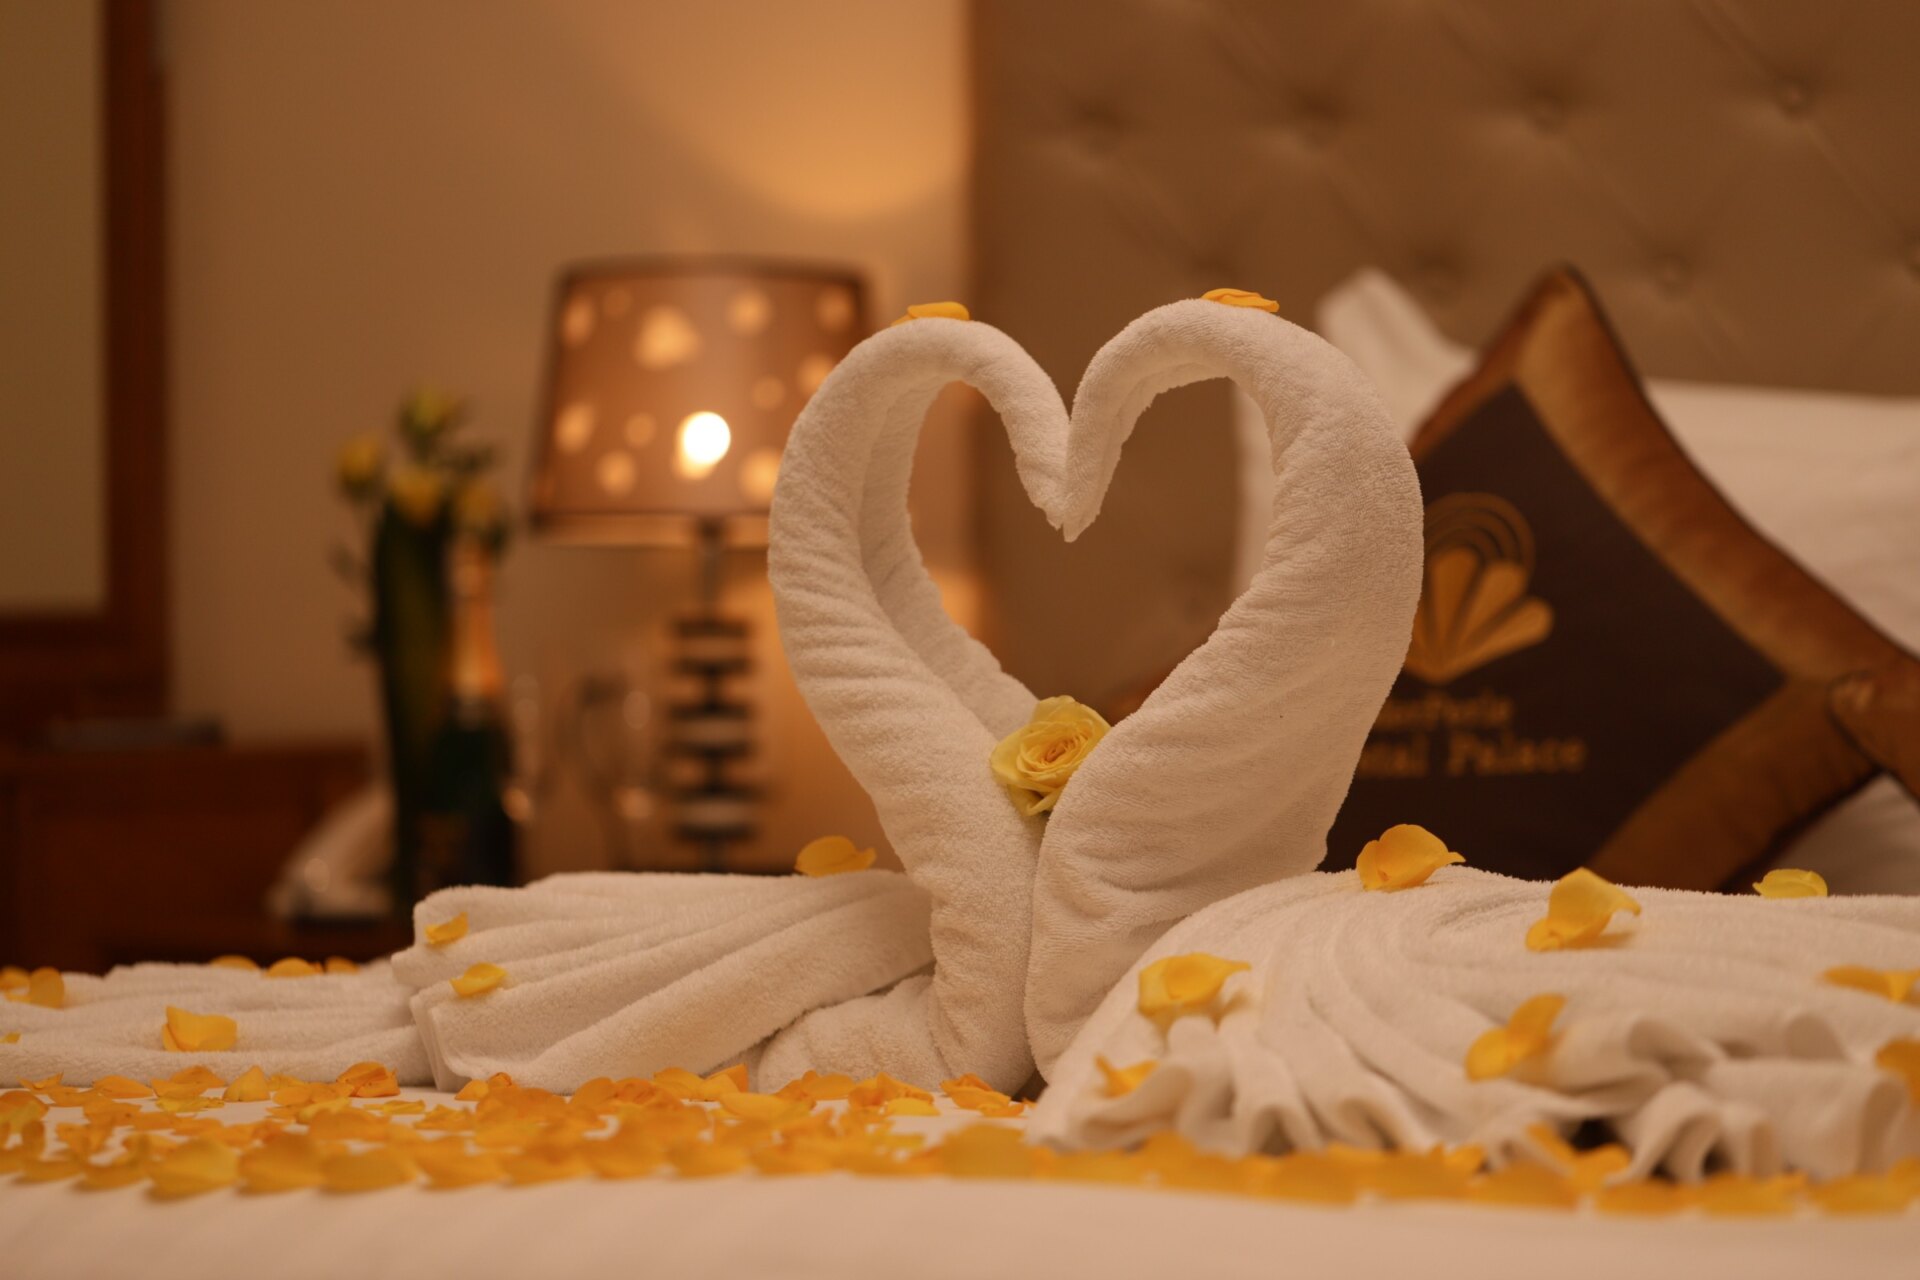 Khám phá khách sạn lãng mạn cho đêm tân hôn ngọt ngào ở TPHCM